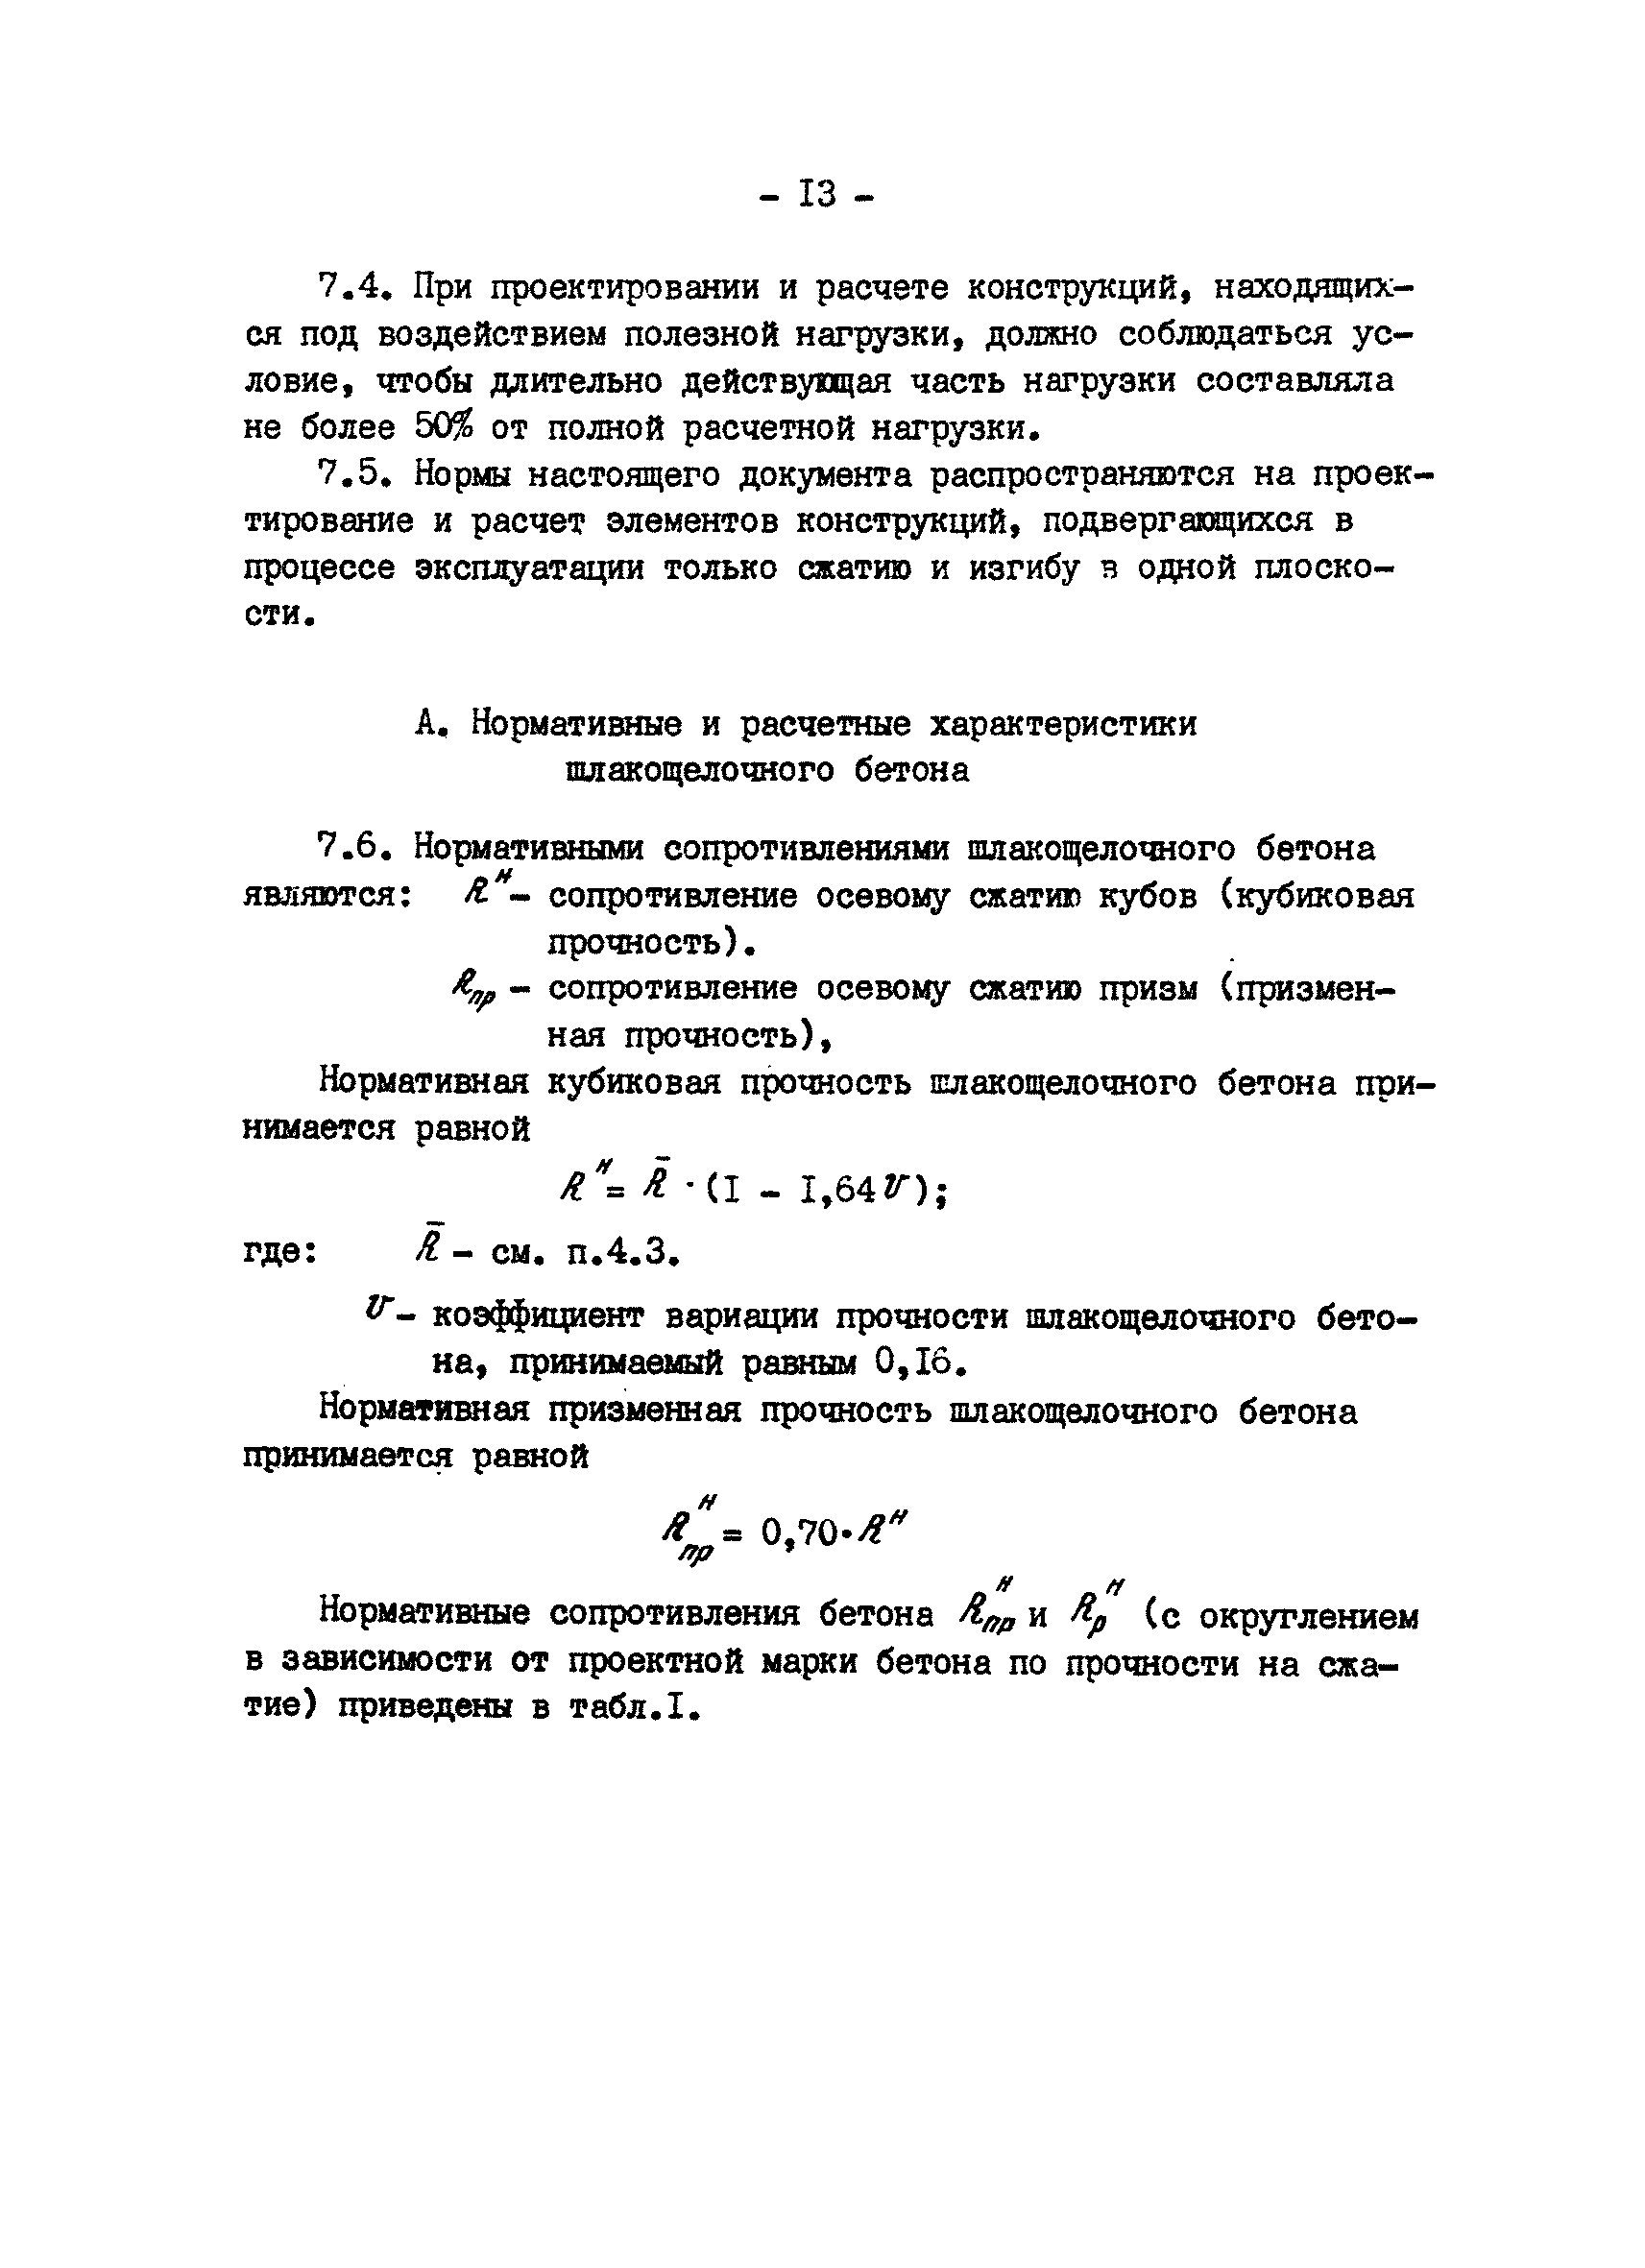 ВСН 65.12-83/Минпромстроя СССР